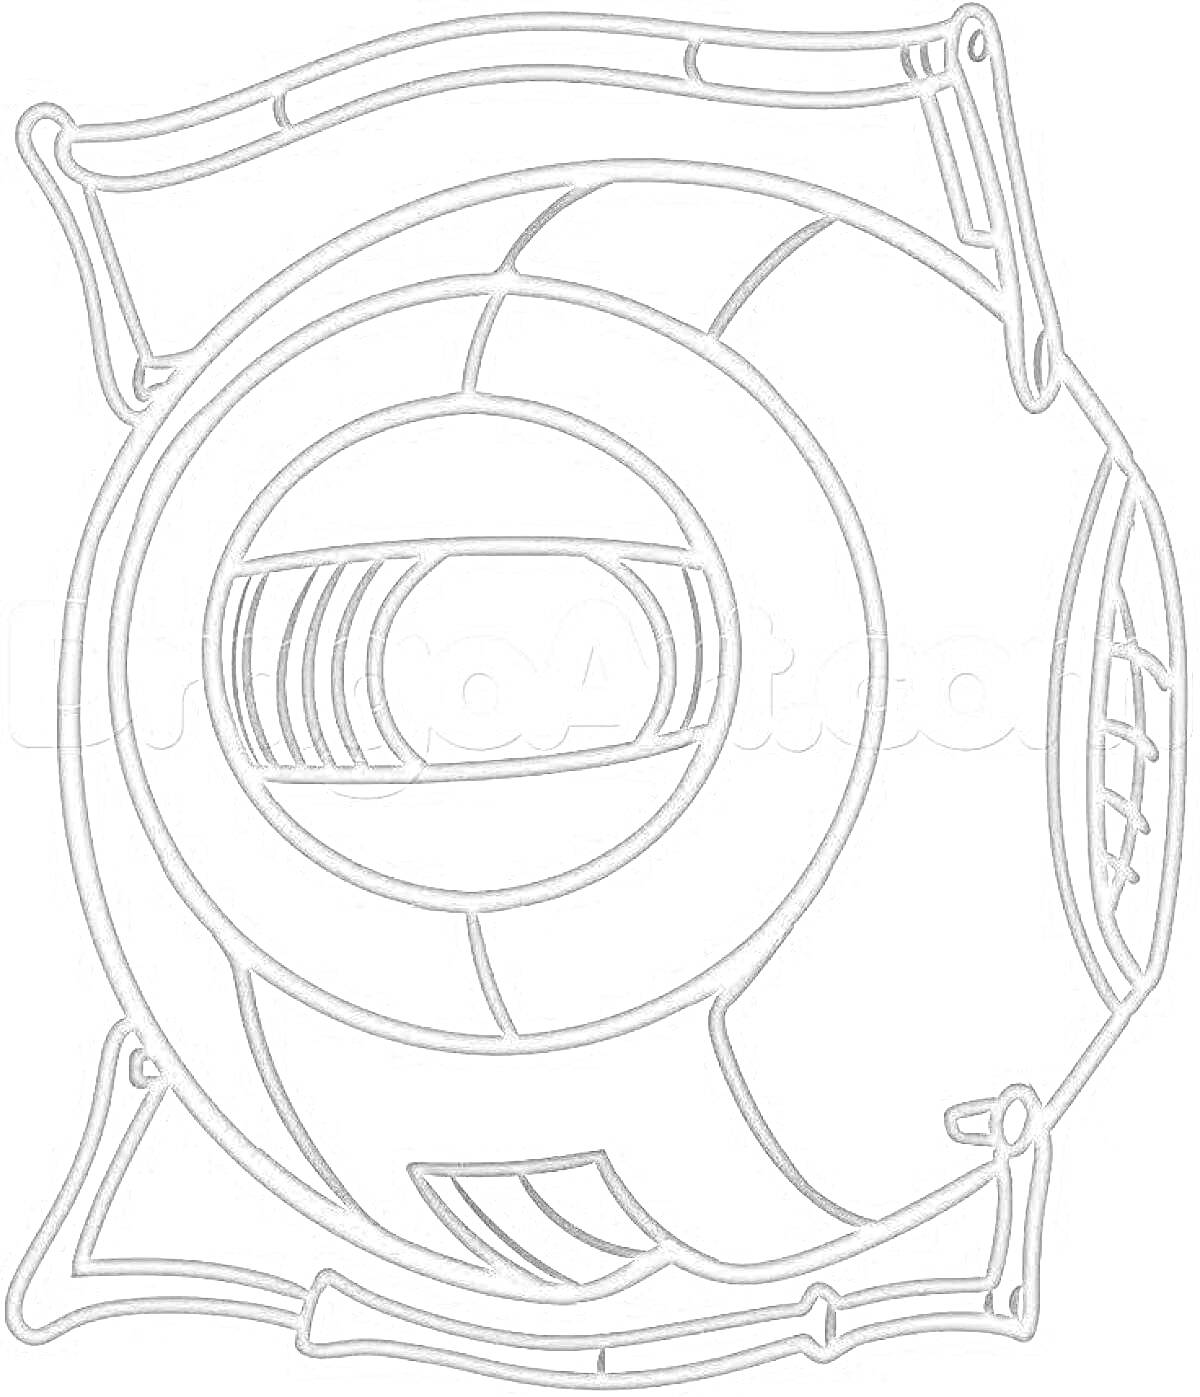 Раскраска Портал, круглый робот с глазом, металлические детали